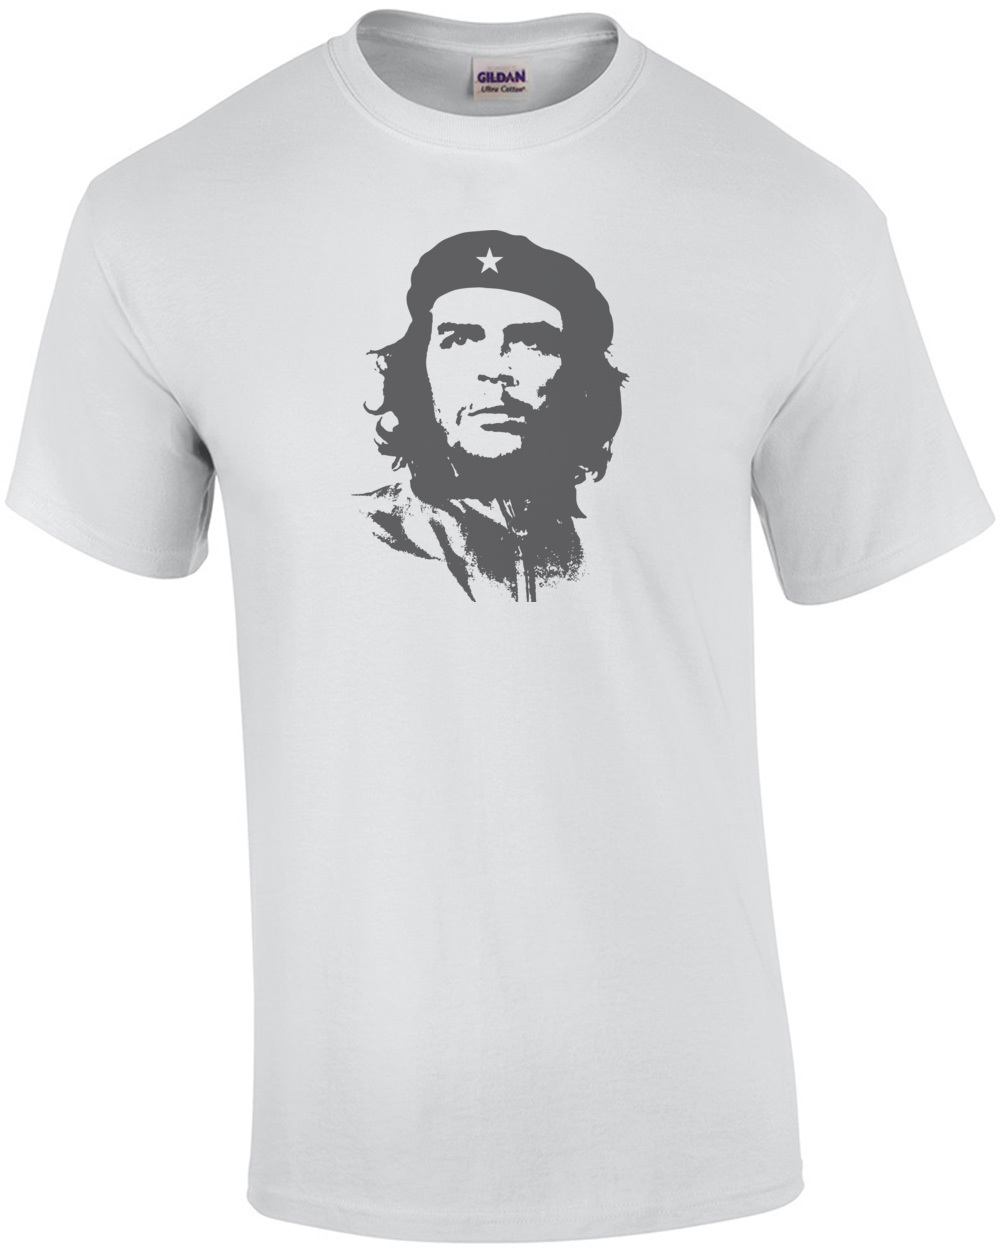 Che Guevara | eBay